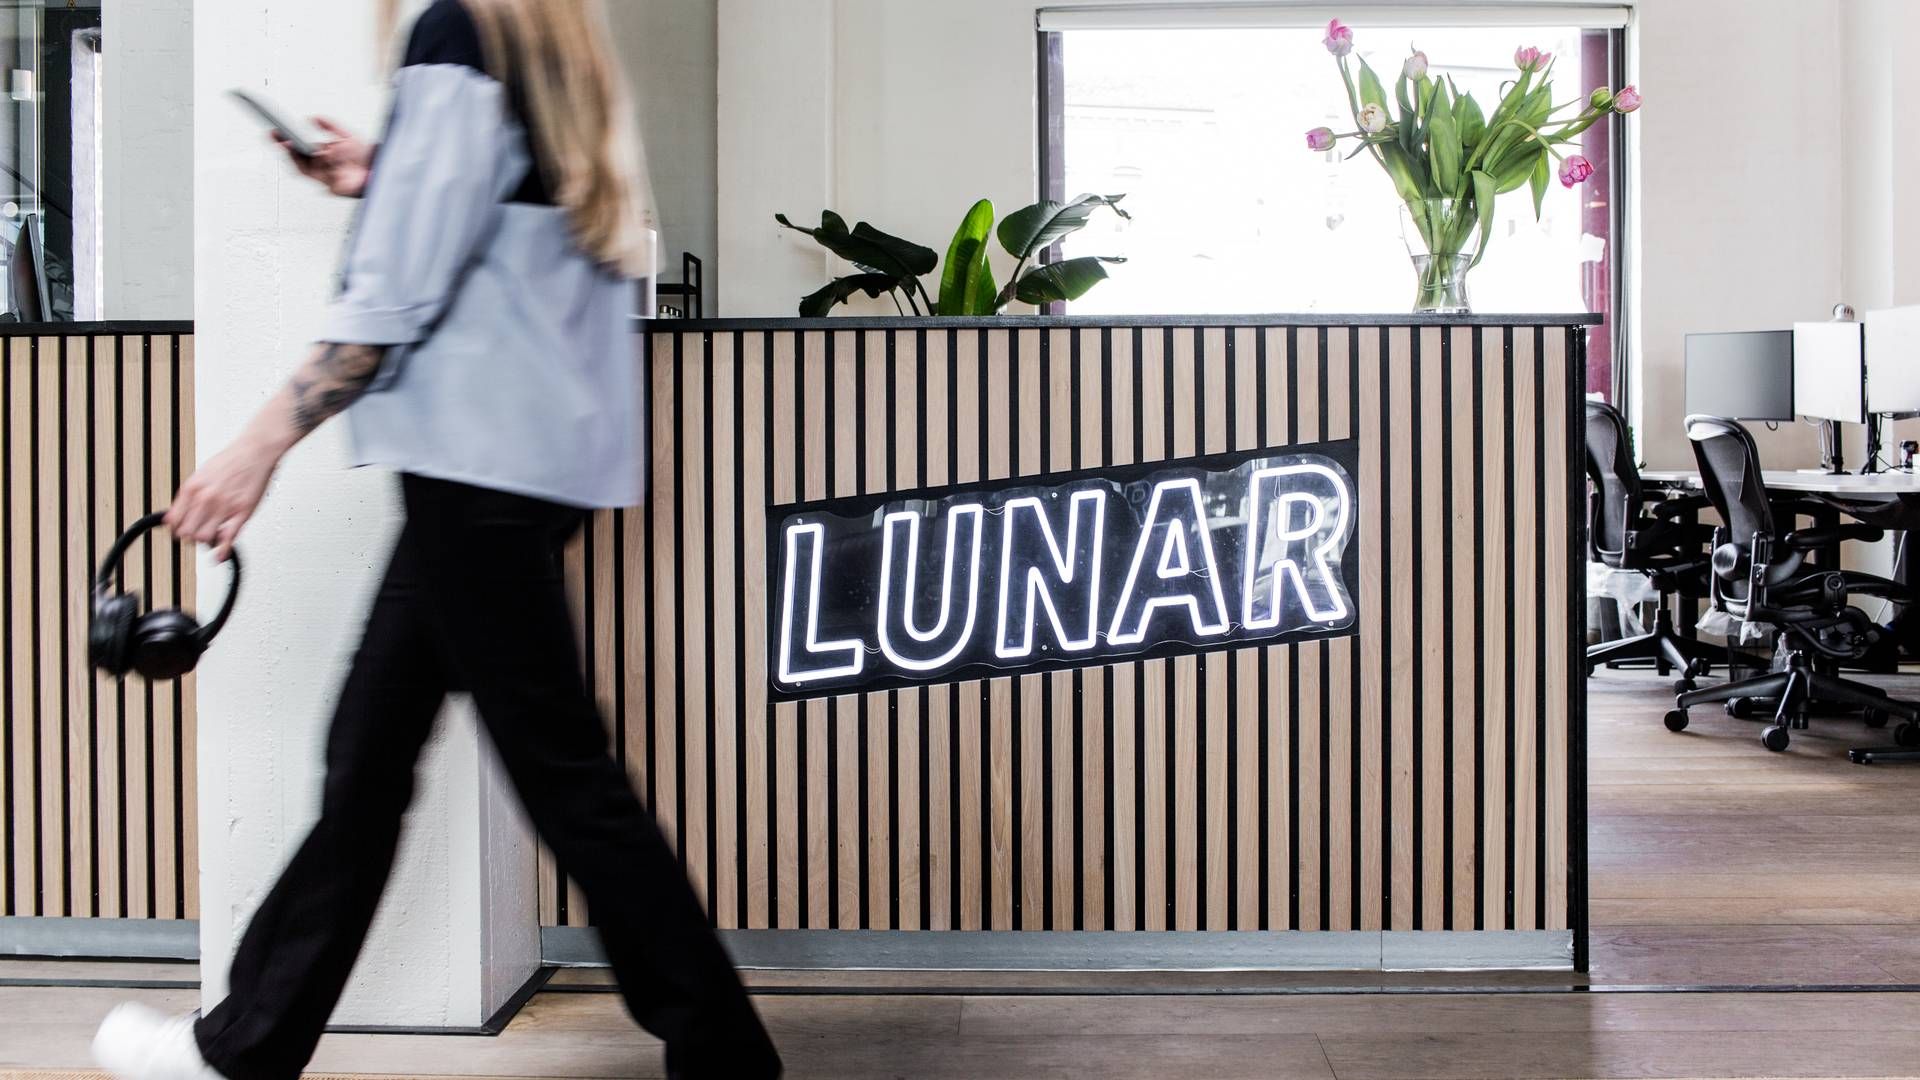 Lunar blev mandag dømt til at betale erstatning på godt 415 mio. kr. i en retssag, som 116 aktionærer i norske Instabank har anlagt mod den danske bank. | Foto: Pr/lunar Bank